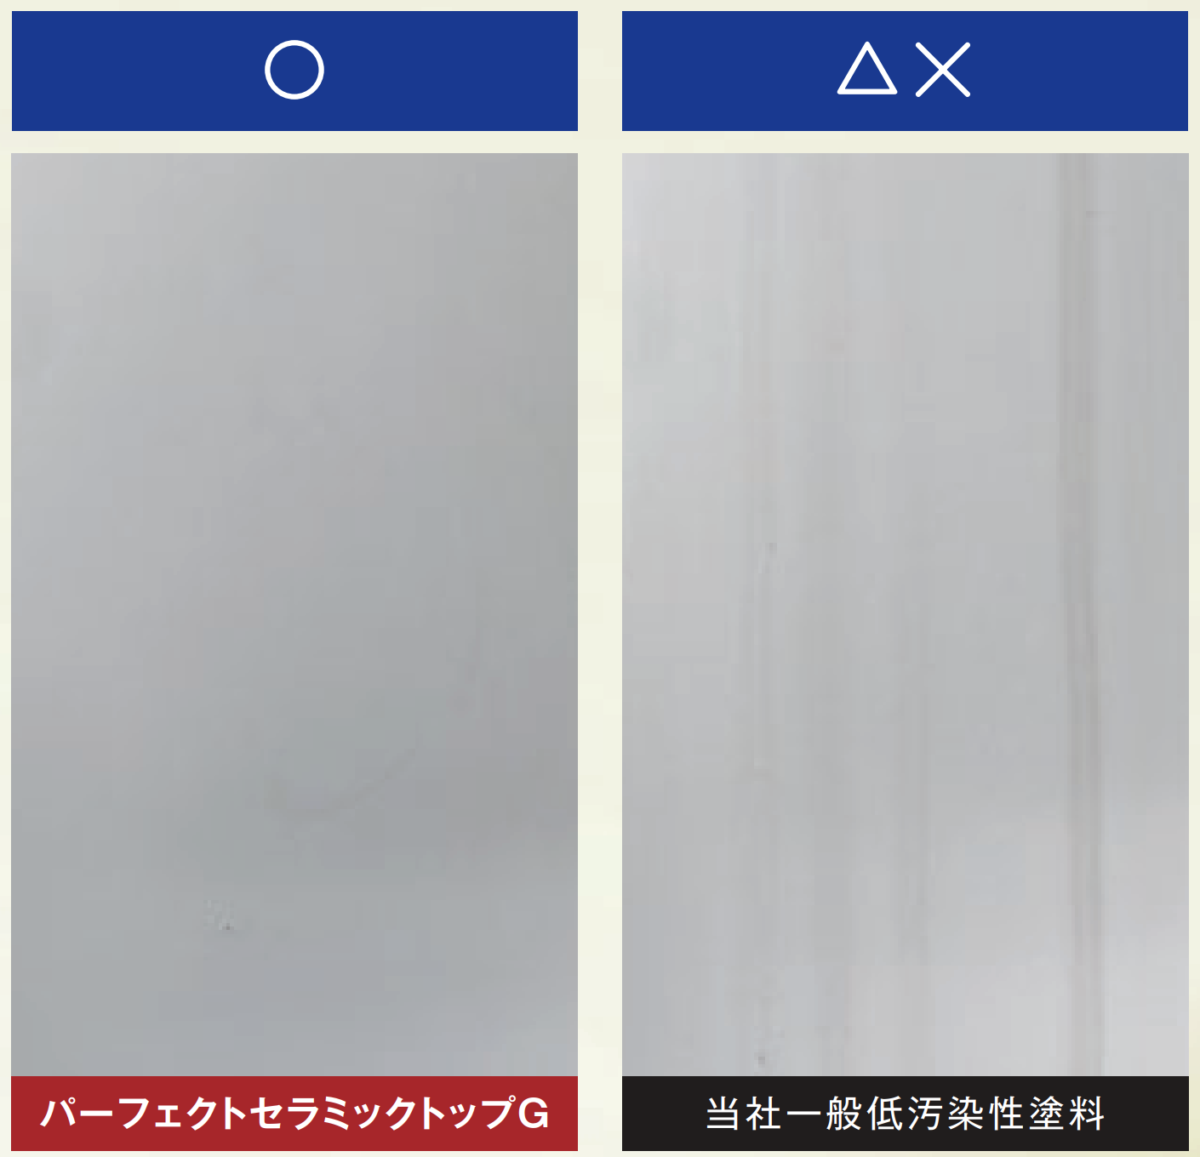 【東京外壁塗装専門店の取り扱い塗料について】パーフェクトセラミックトップ